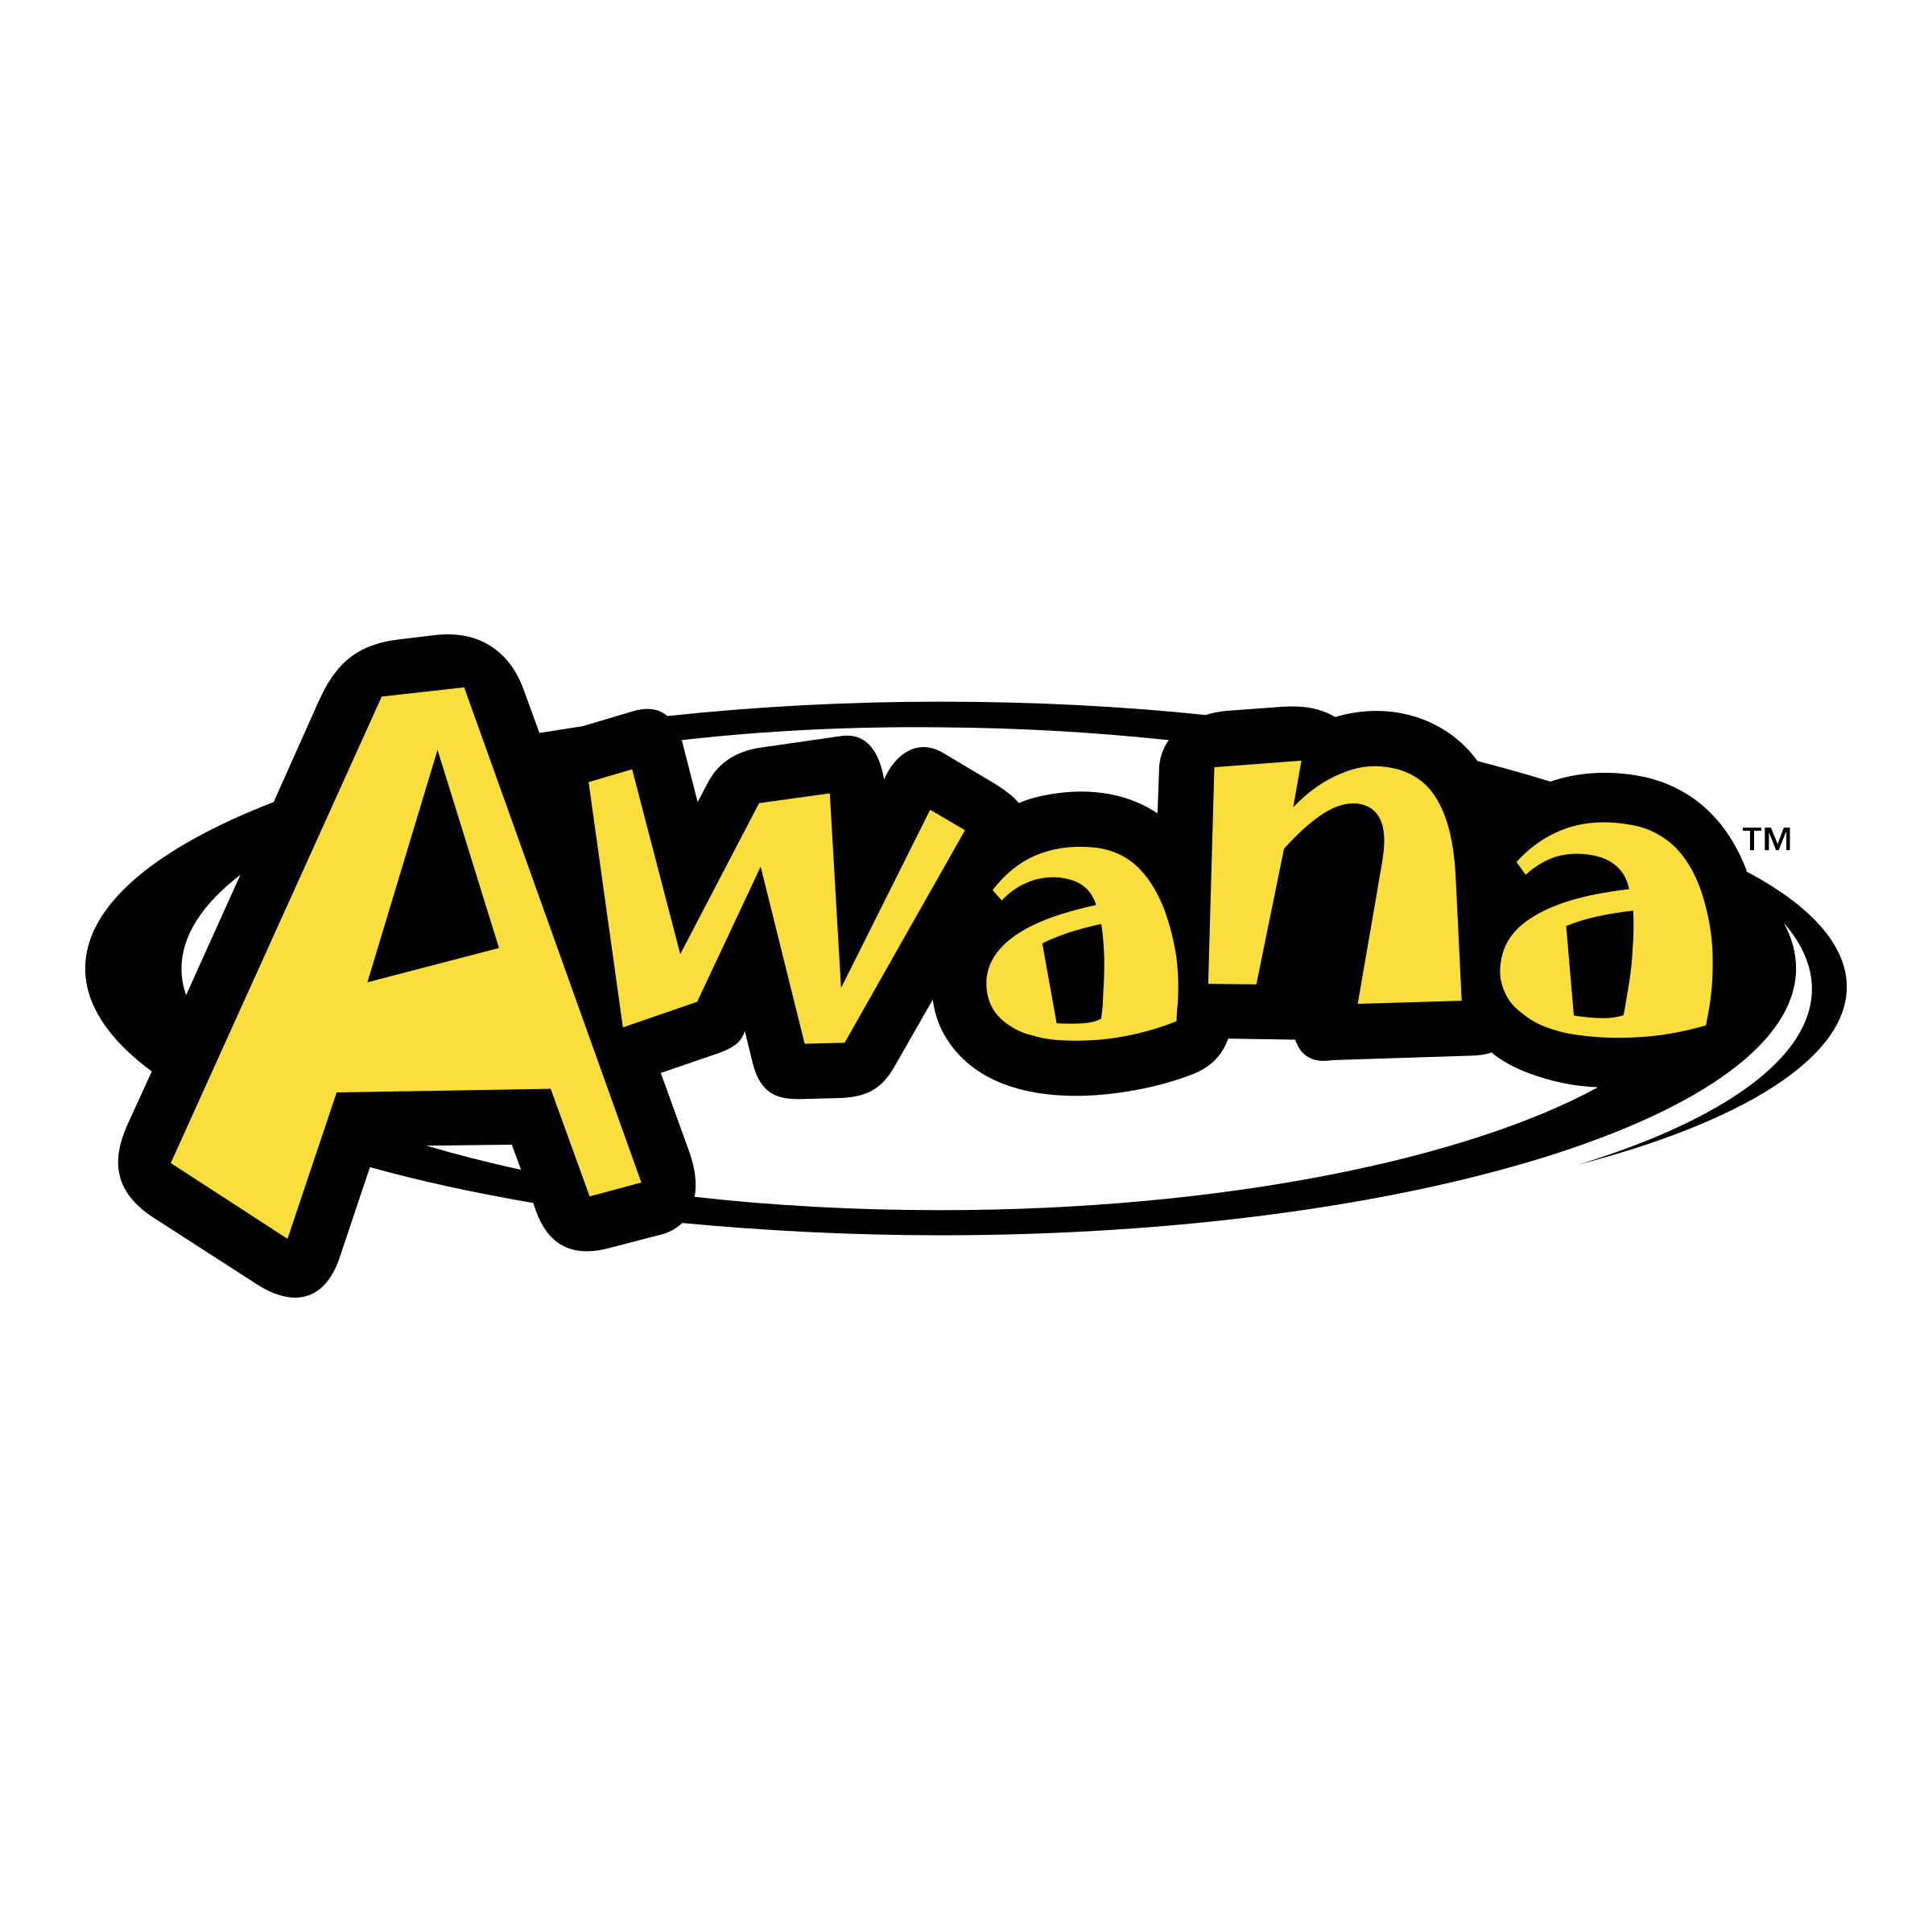 Awana logo